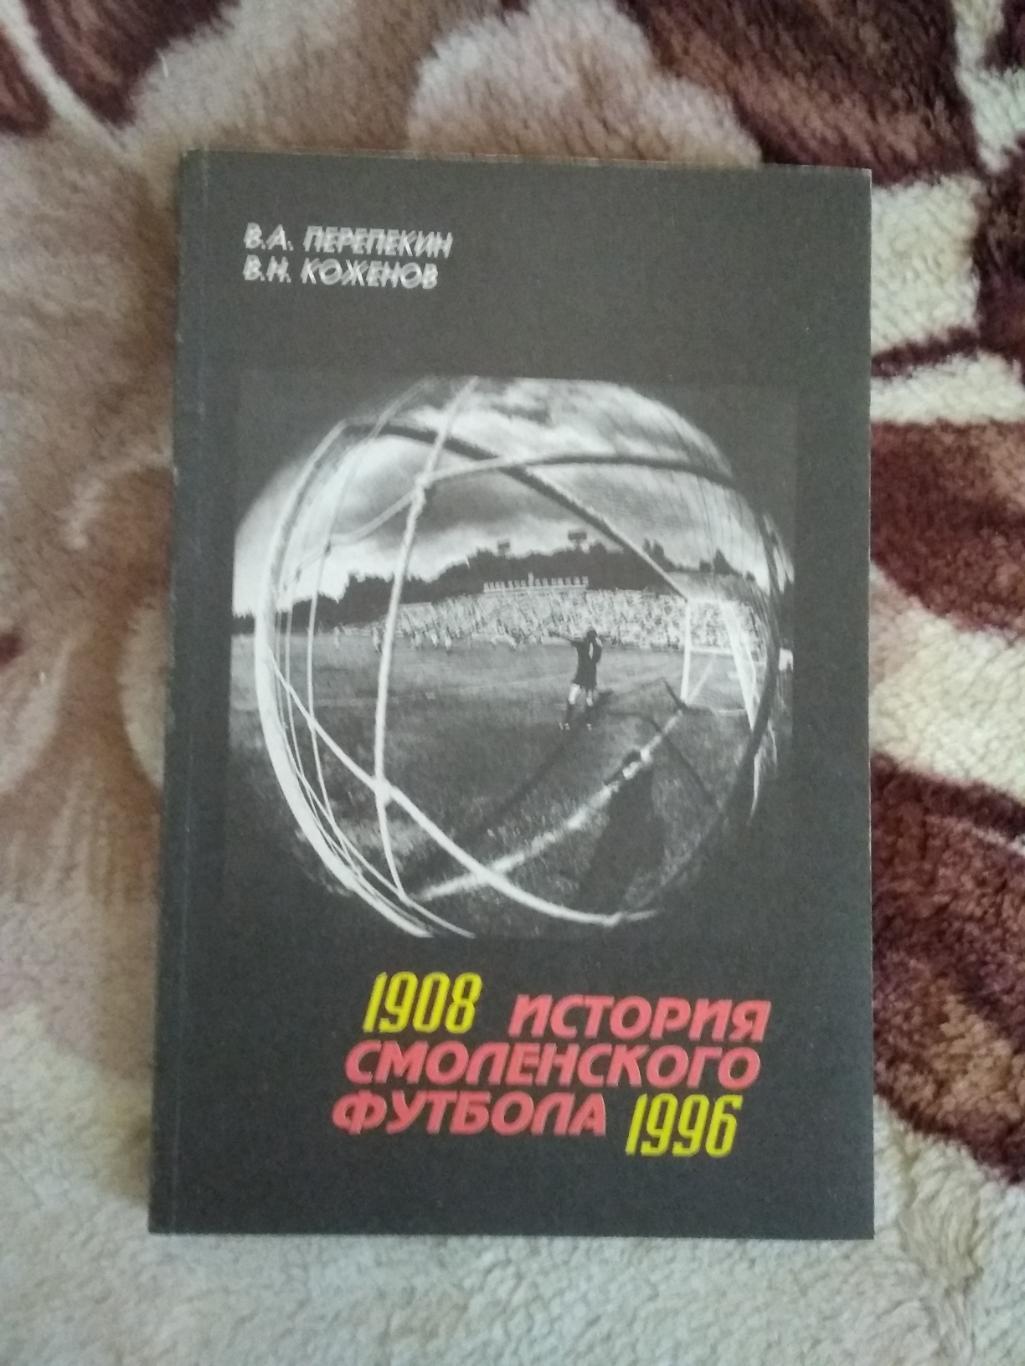 В.Препекин,В.Коженов.История смоленского футбола 1908-1996.Смоленск 1996.